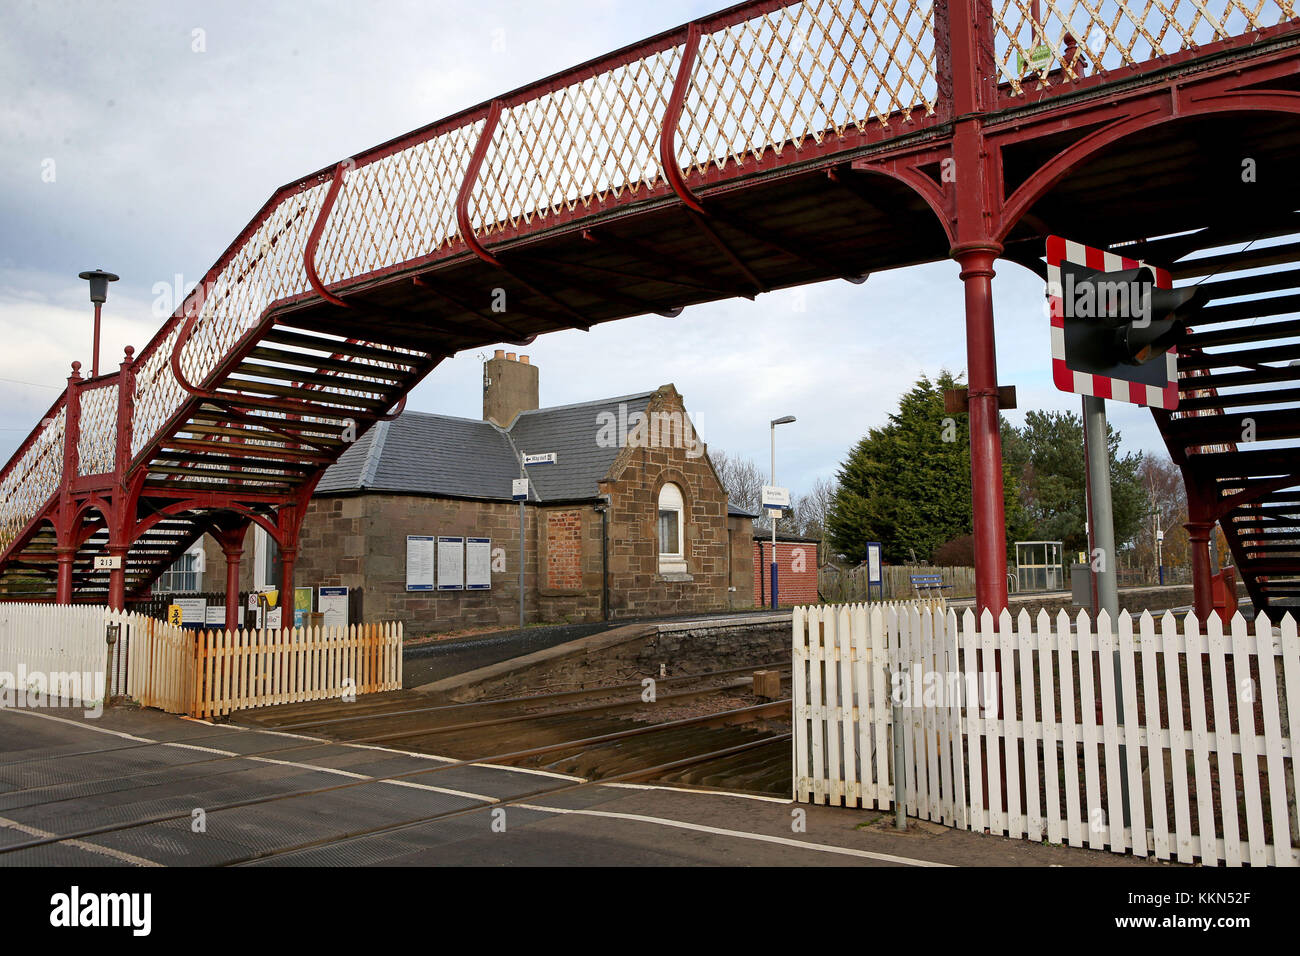 Barry Links stazione ferroviaria vicino a Carnoustie in Angus che è stato identificato come la Gran Bretagna è meno utilizzato stazione dopo appena 24 passeggeri percorsa da o per la stazione nel 2016/17, secondo i dati pubblicati dall'Ufficio della ferrovia e strada. Foto Stock